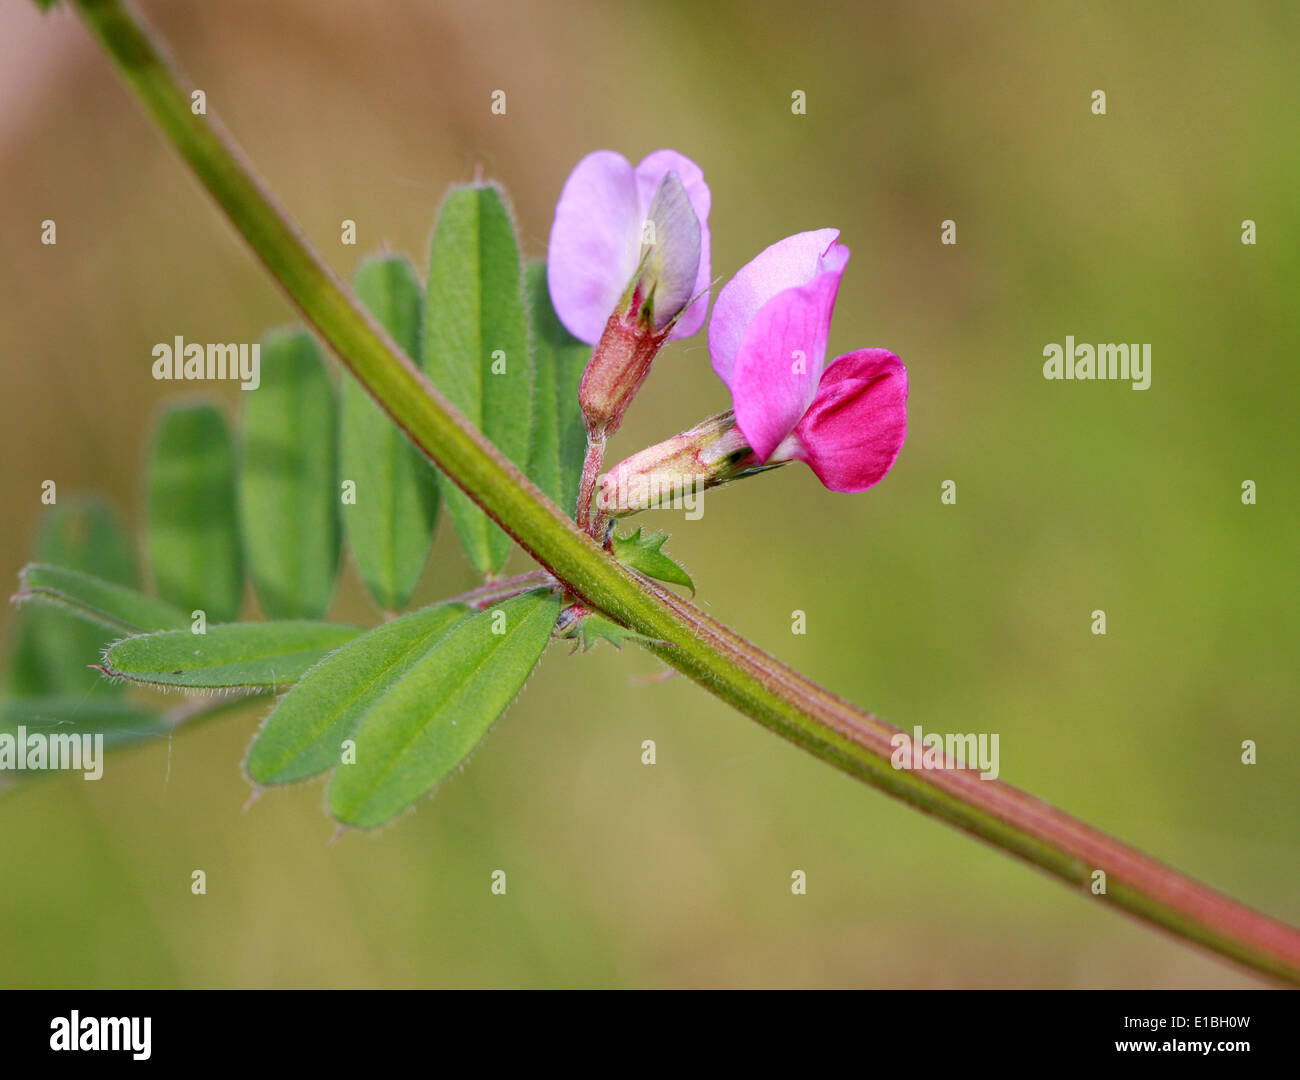 Common Vetch, Vicia sativa, Fabaceae Stock Photo